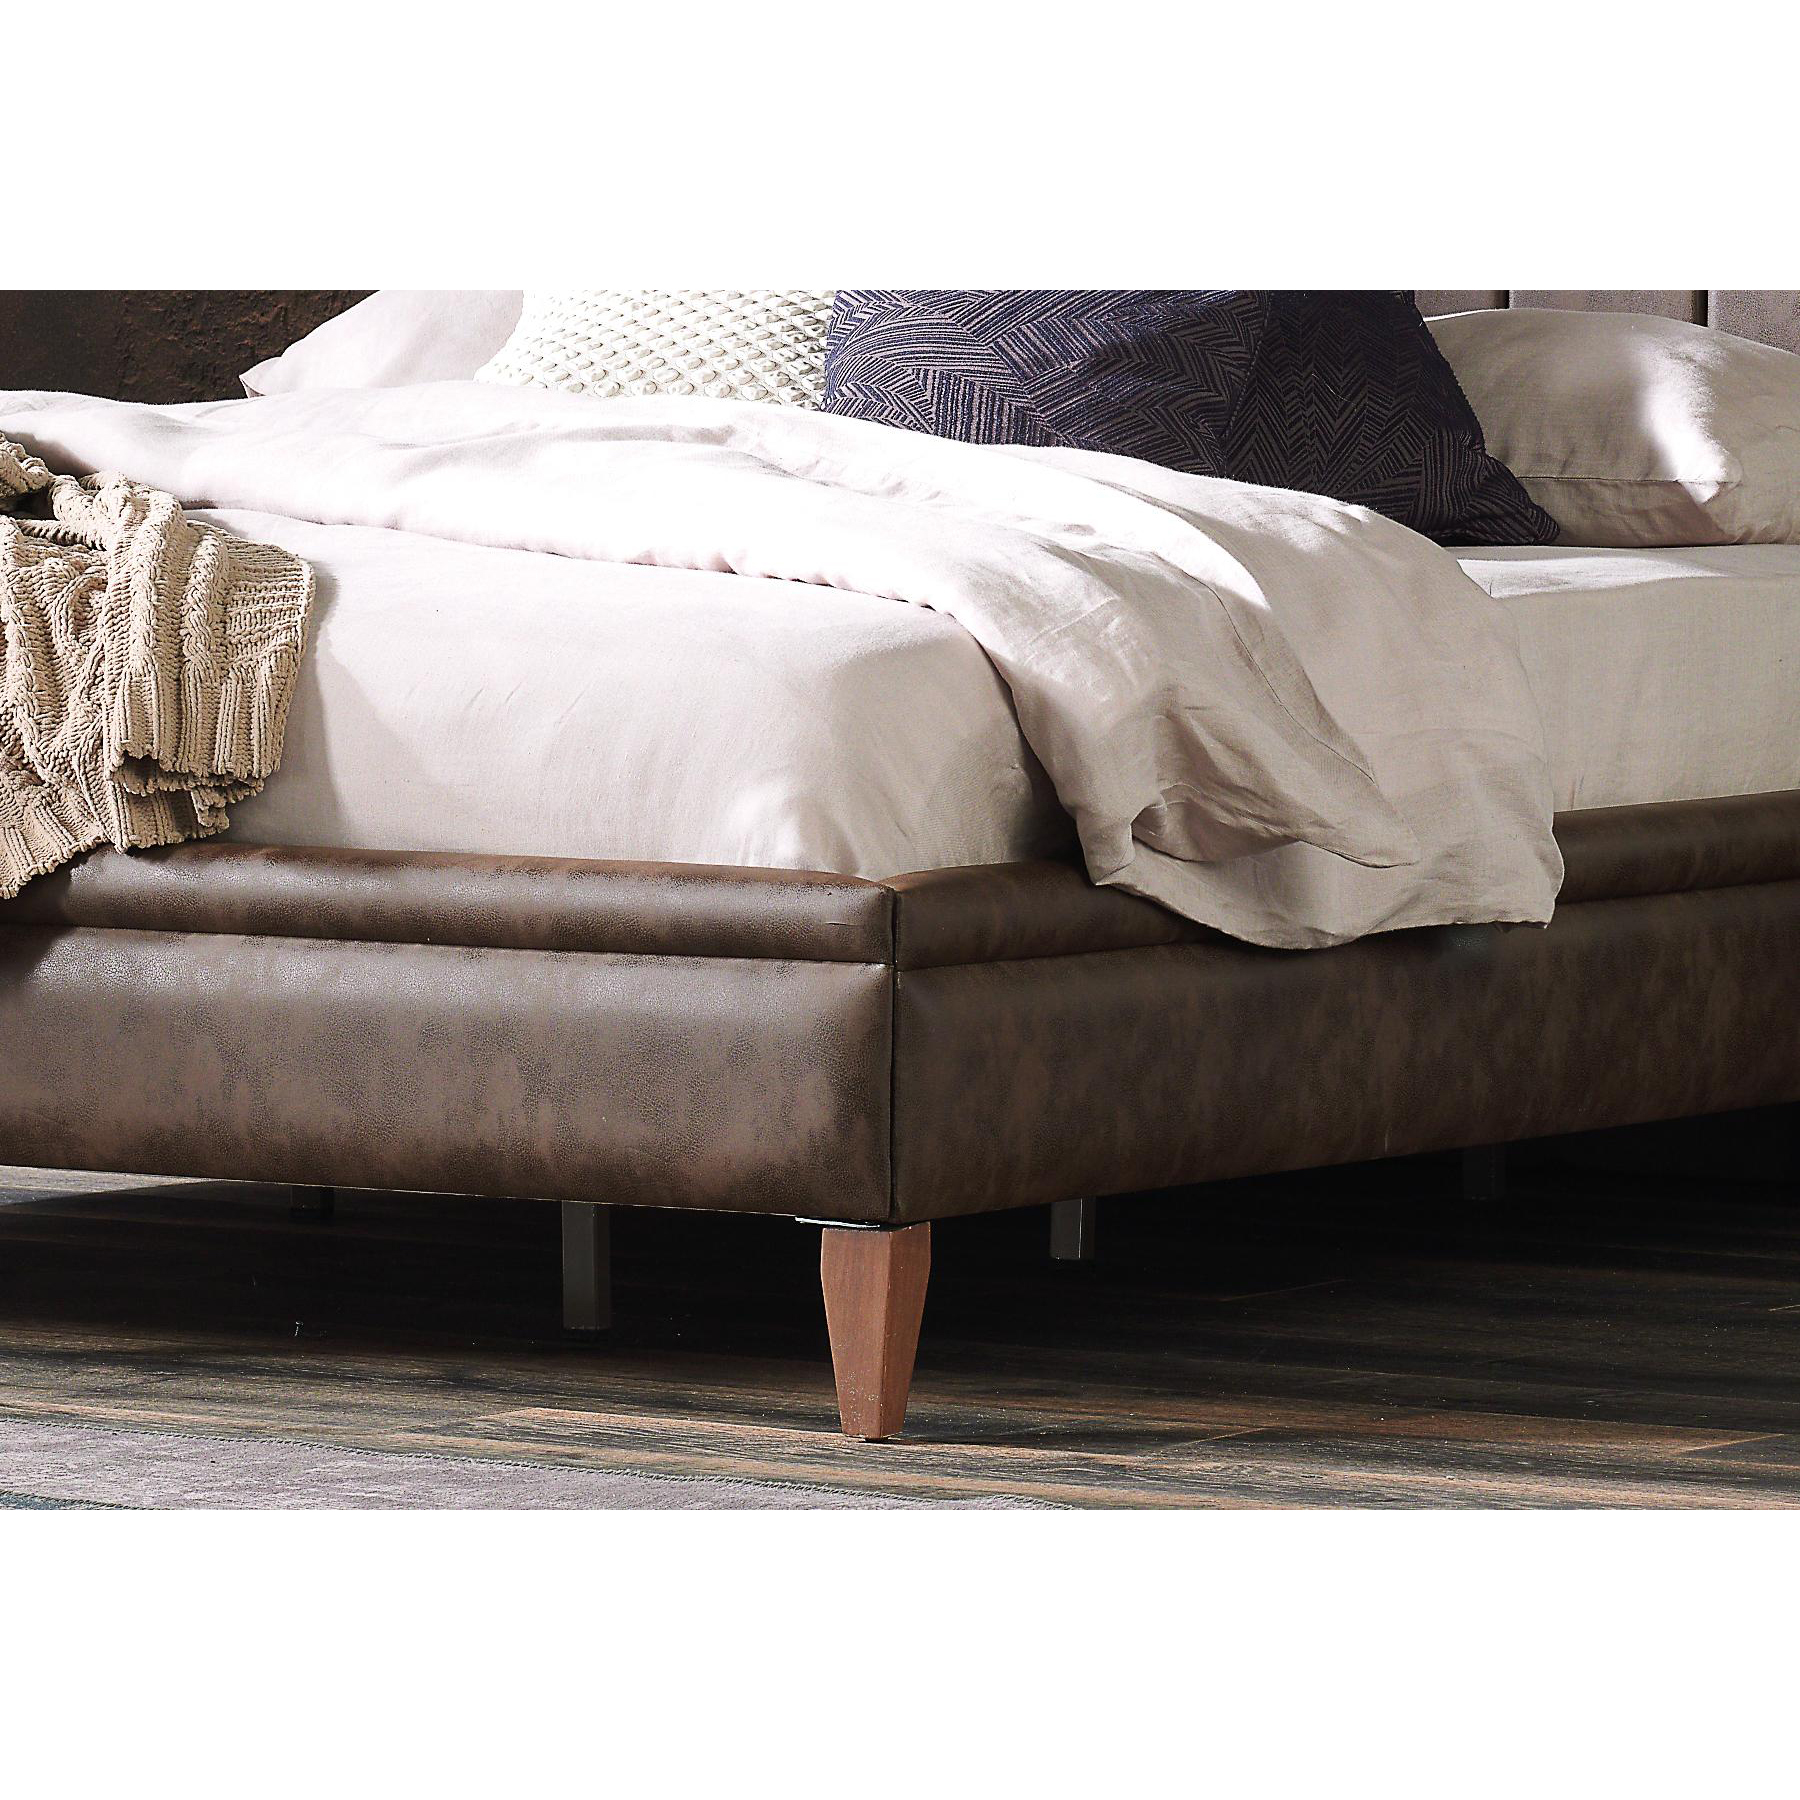 Кровать Enza Home Elegante,160х200, цвет коричневый 308 (EH20179)EH20179